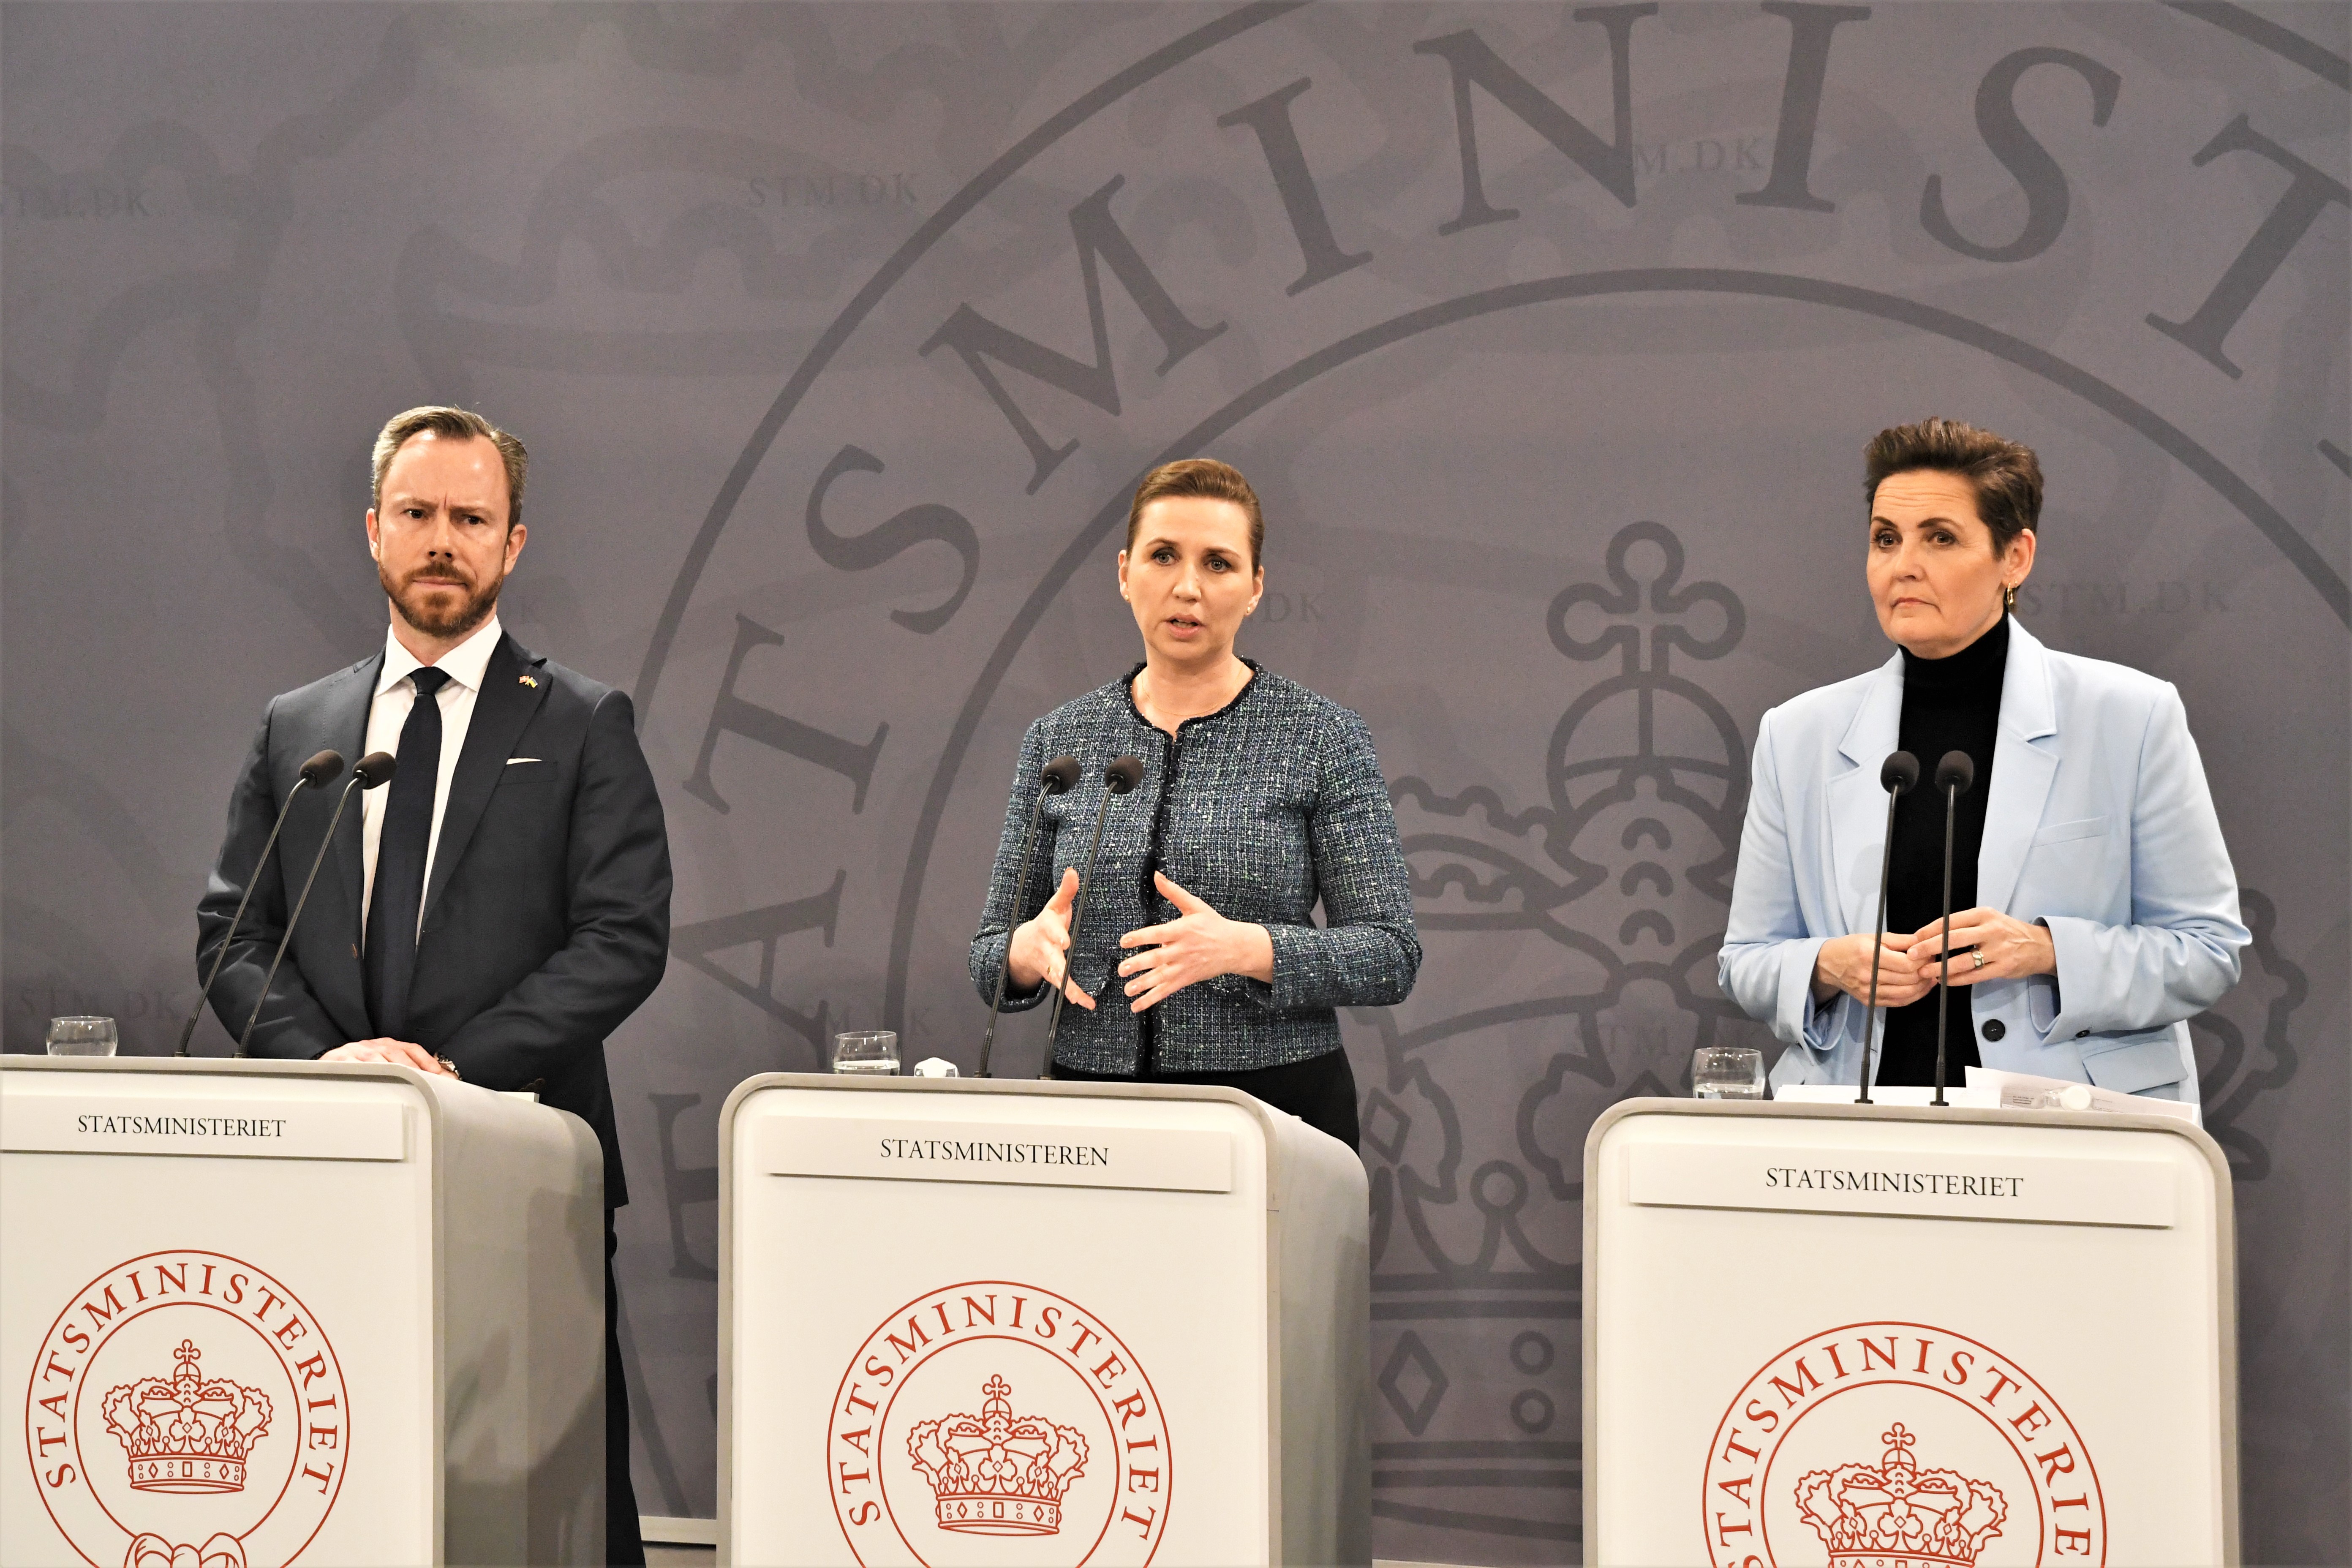 Die Dänen werden im Referendum am 1. Juni über eine „historische“ Erhöhung der Militärausgaben abstimmen